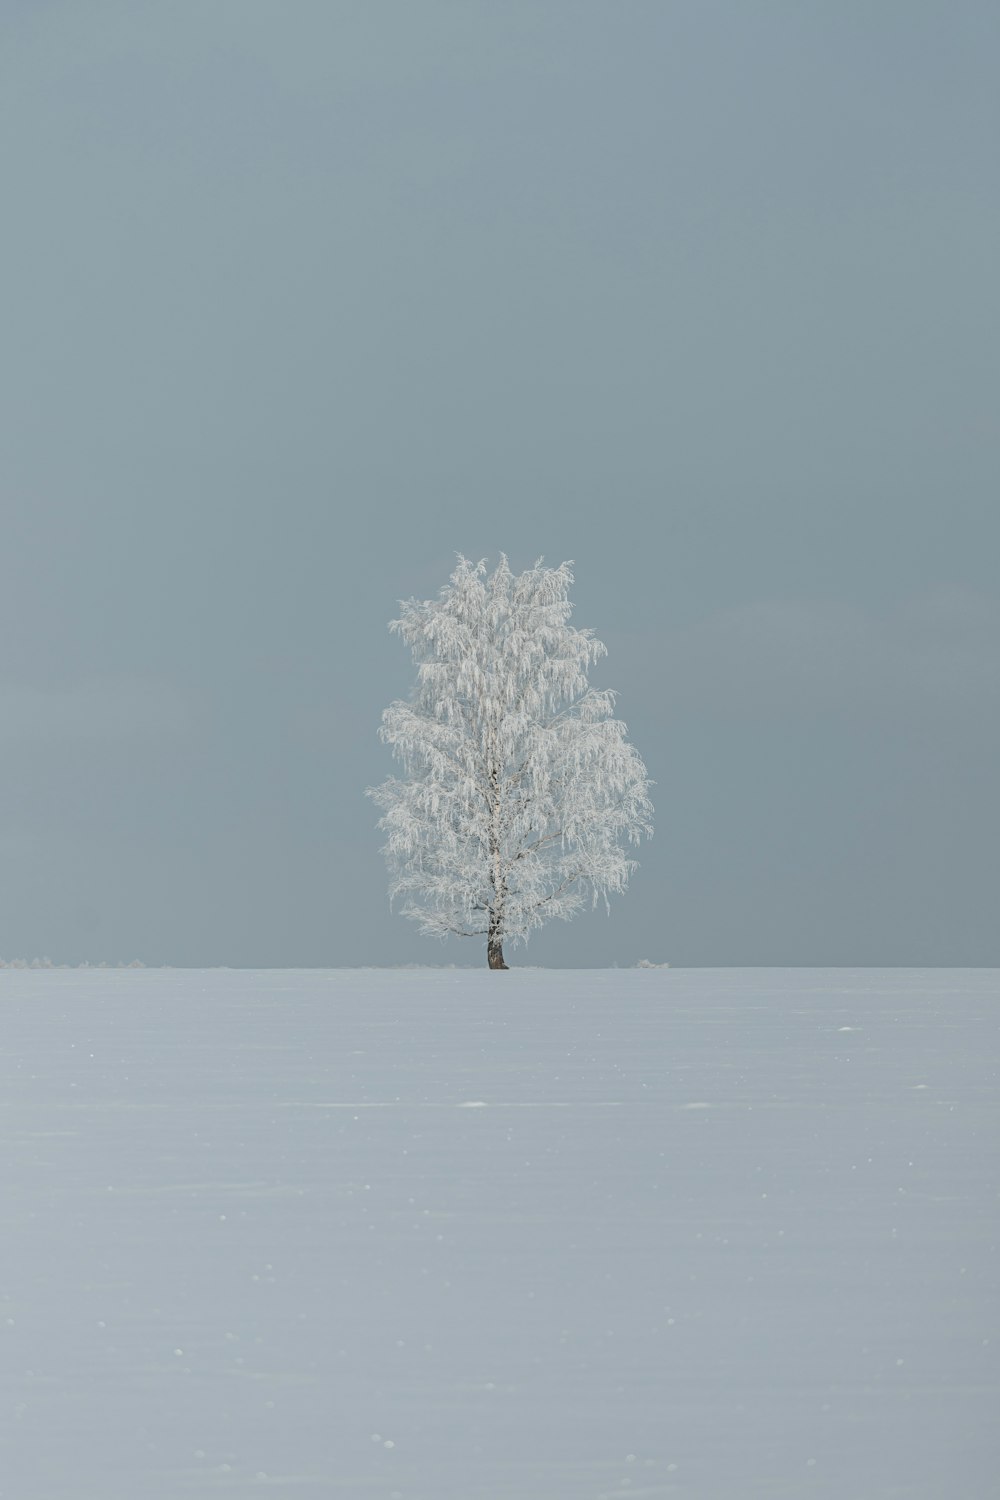 Ein einsamer Baum steht allein in einem verschneiten Feld